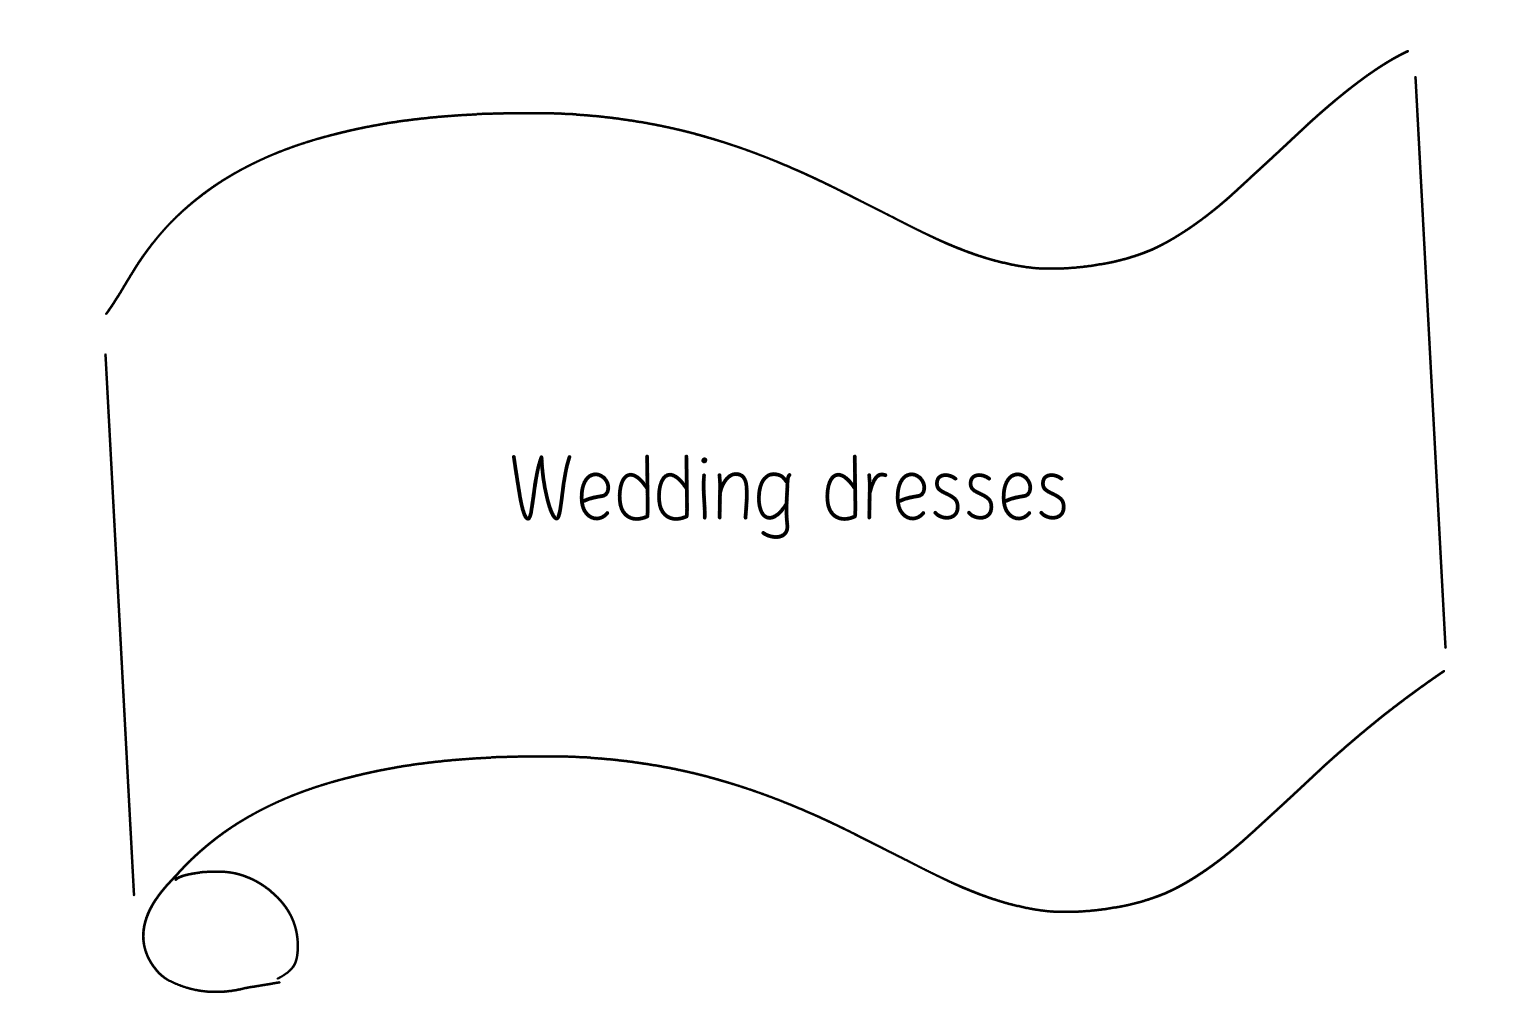 Ilustrace svatebních šatů a svatebních salonů